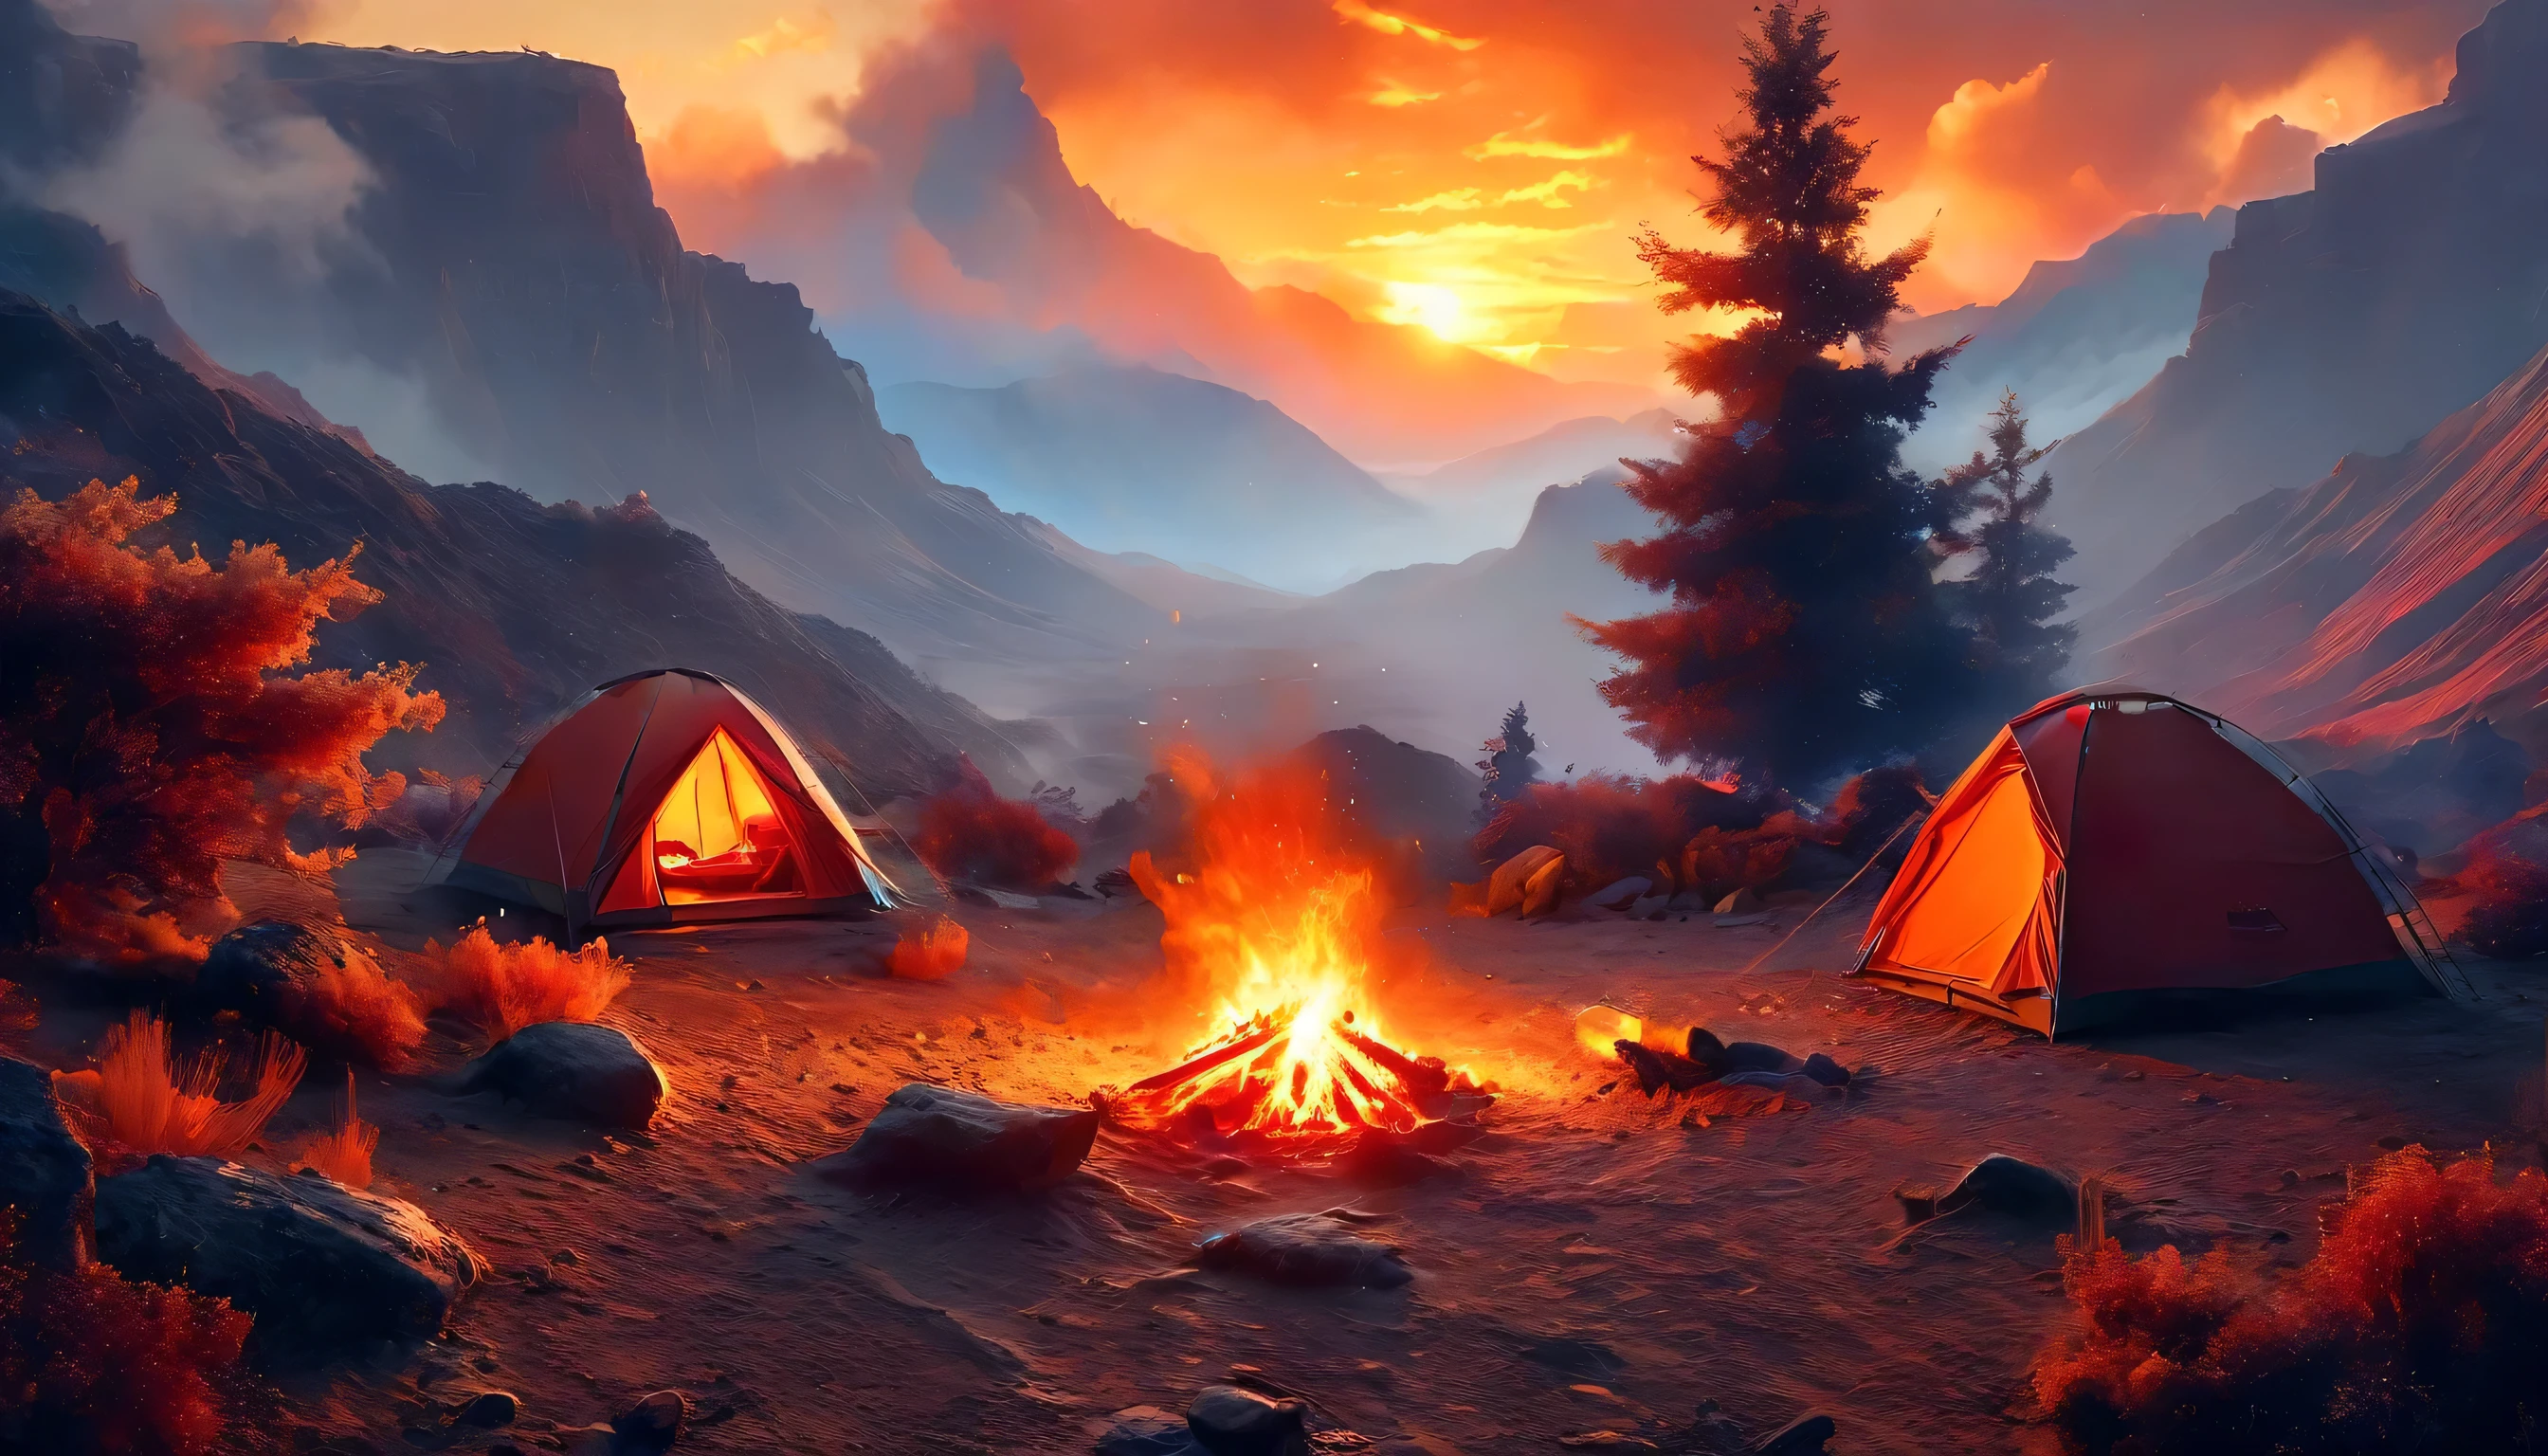 arafed, uma foto de um acampamento (tent: 1.2) e pequeno (fogueira: 1.3), no topo de uma montanha deserta, seu pôr do sol o céu está em vários tons de  (vermelho: 1.1), (laranja: 1.1), (Azul: 1.1) (roxo:1.1) há fumaça subindo do acampamento de bombeiros, há uma vista magnífica do desfiladeiro do deserto e das ravinas, há árvores esparsas no horizonte, é um momento de serenidade, paz, e relaxamento, melhor qualidade, 16k,  fotorrealismo, Sessão fotográfica vencedora do prêmio National Geographic, foto ultra ampla, Nebulosa Furiosa, senhora sombra